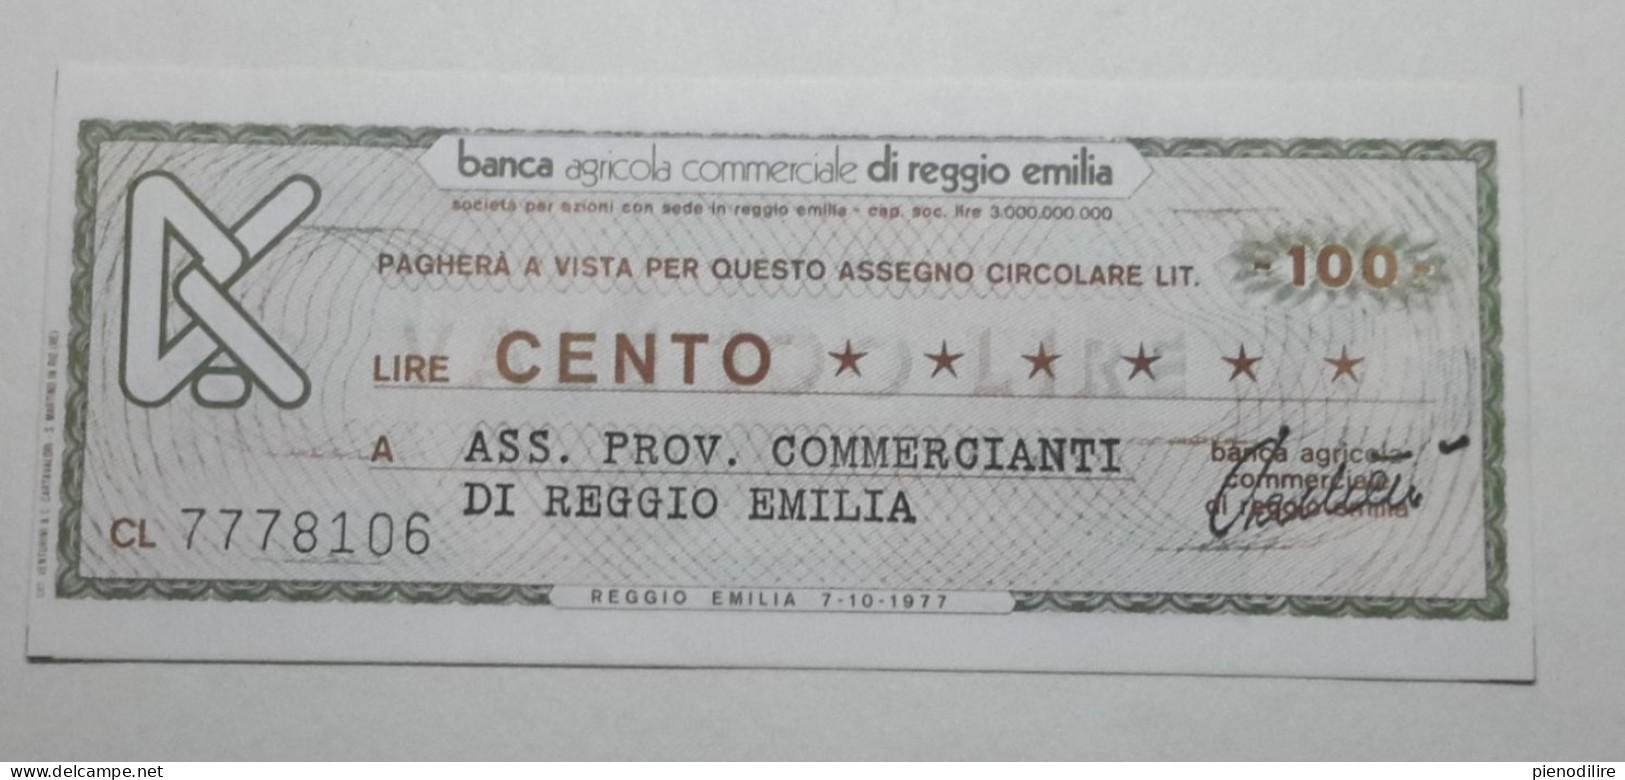 100 LIRE 7.10.1977 BANCA AGRICOLA COMMERCIALE REGGIO EMILIA (A.46) - [10] Checks And Mini-checks